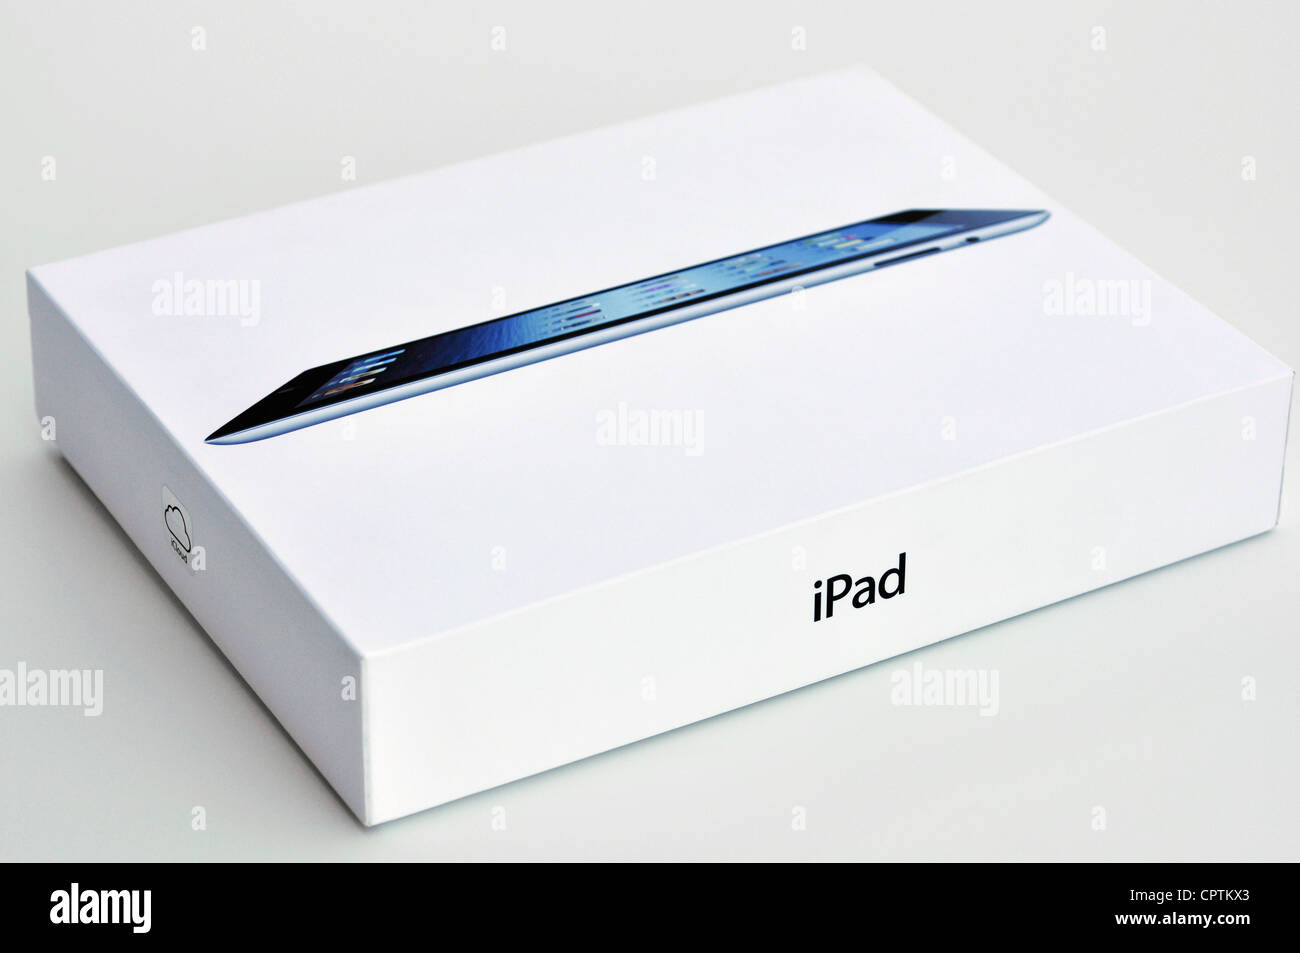 iPad box Stock Photo